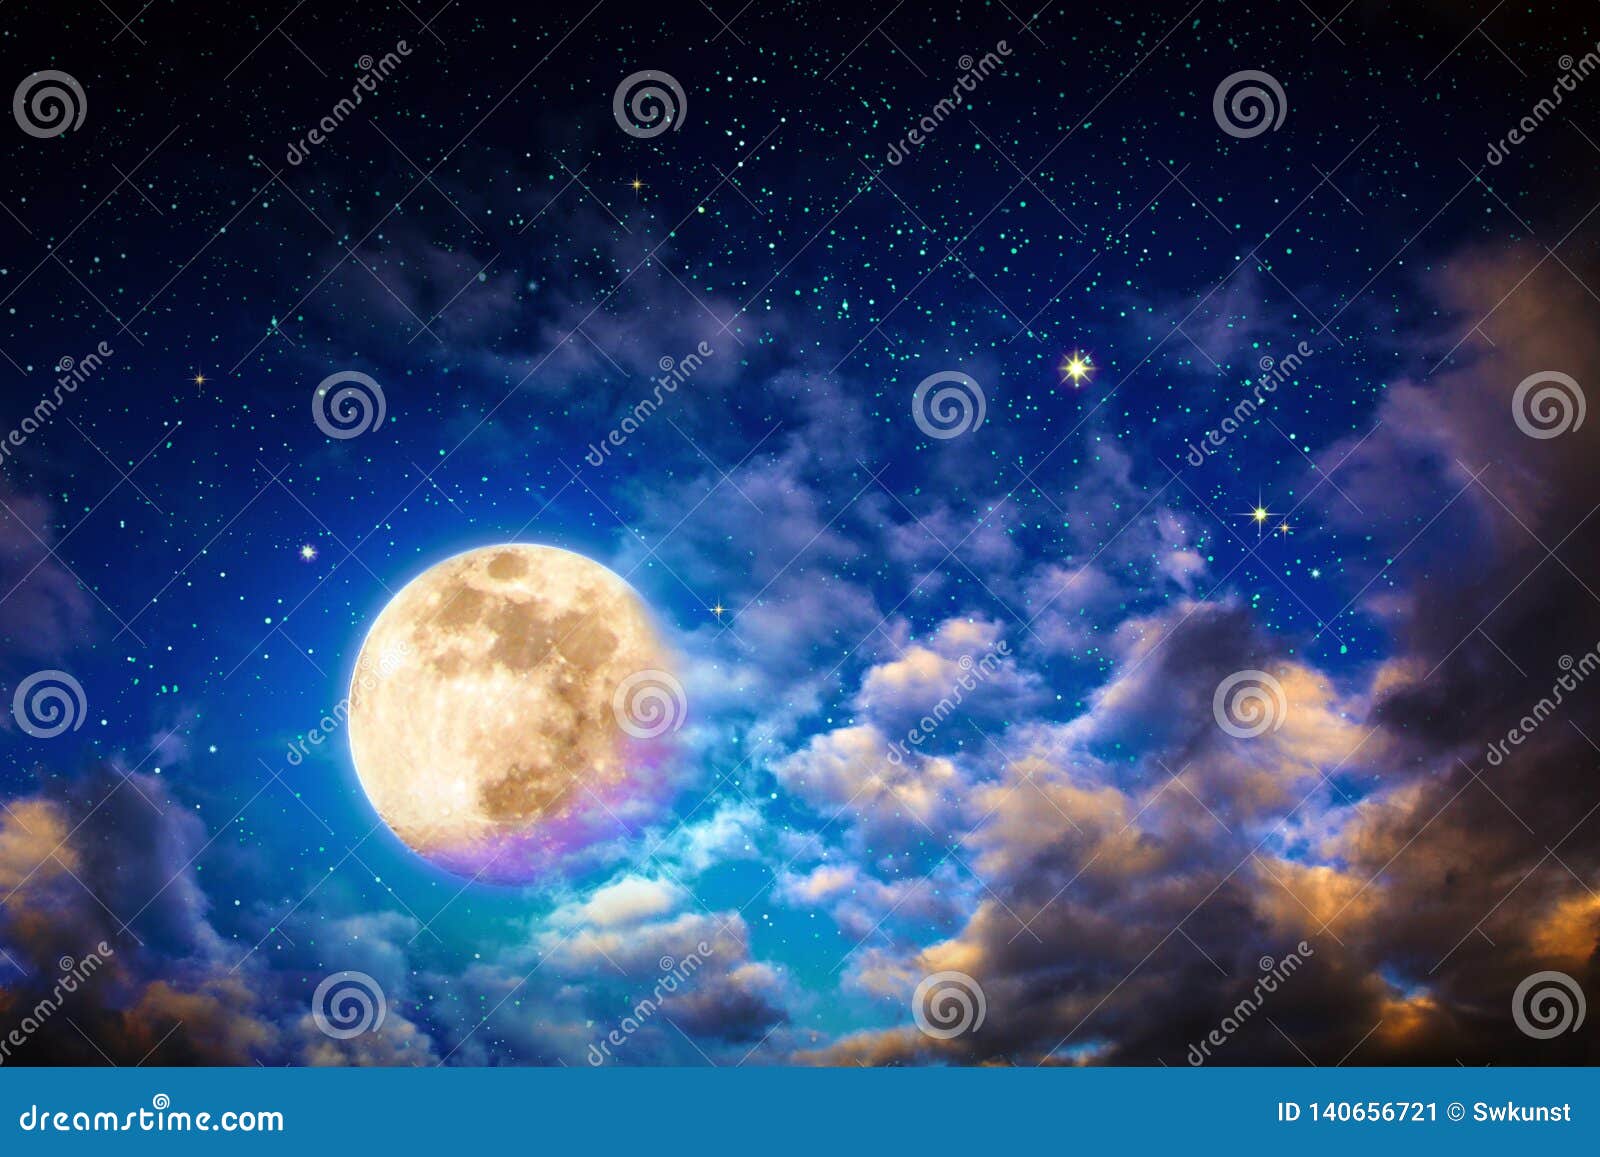 Cảm nhận sự lãng mạn và đầy thơ mộng của bức ảnh Bầu trời đêm tối với sao, đám mây lớn và trăng tròn. Bạn sẽ được ngắm nhìn những ngôi sao sáng lấp lánh, những đám mây lớn trôi dạt và một chiếc trăng tròn và rực rỡ.